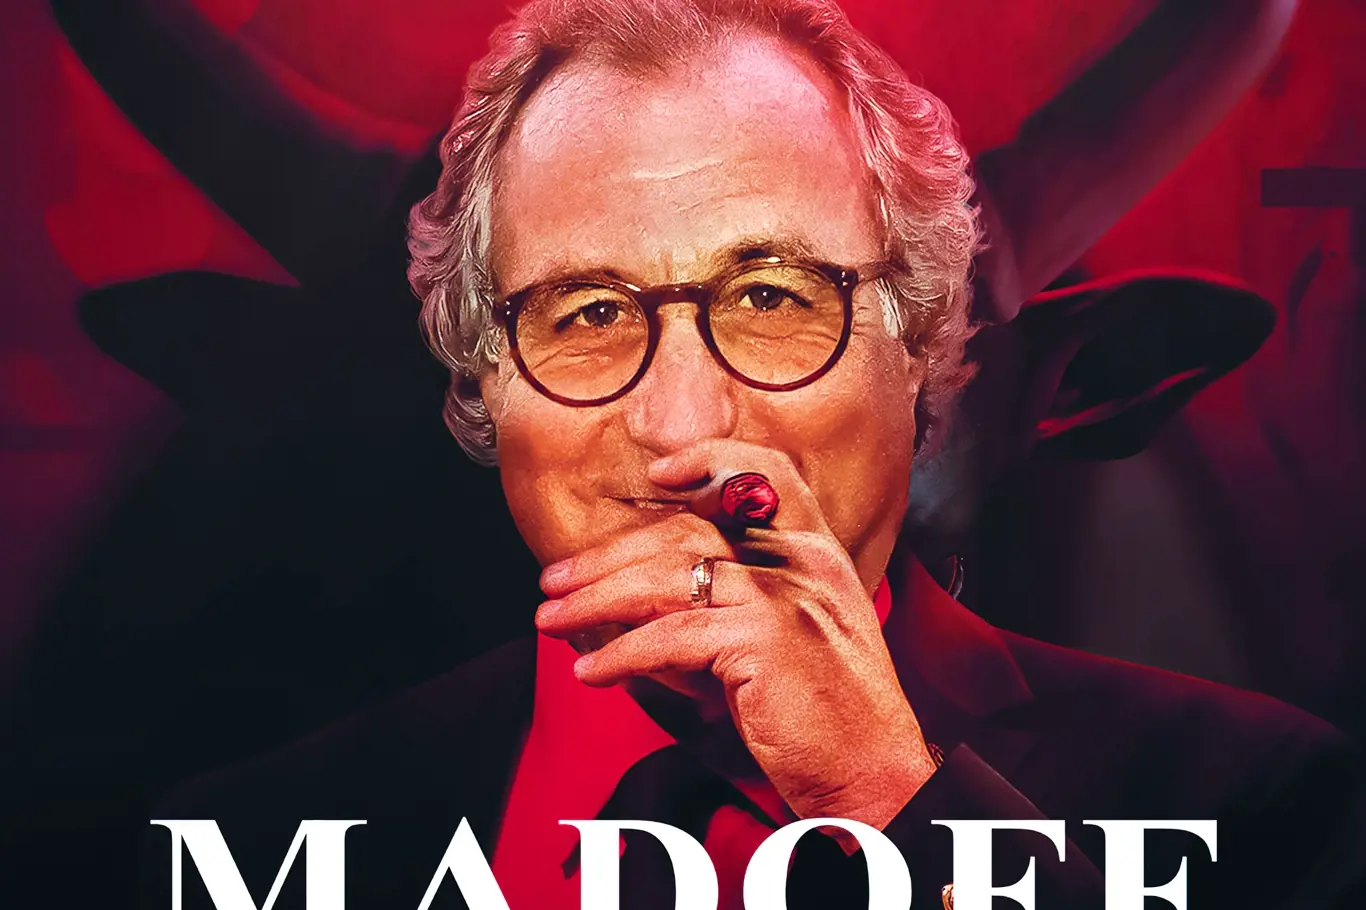 Dokumentární série "Monstrum z Wall Street" vypráví o Bernardu Madoffovi, jednom z největších podvodníků v historii, který způsobil ztrátu přes 65 miliard dolarů svým klientům.